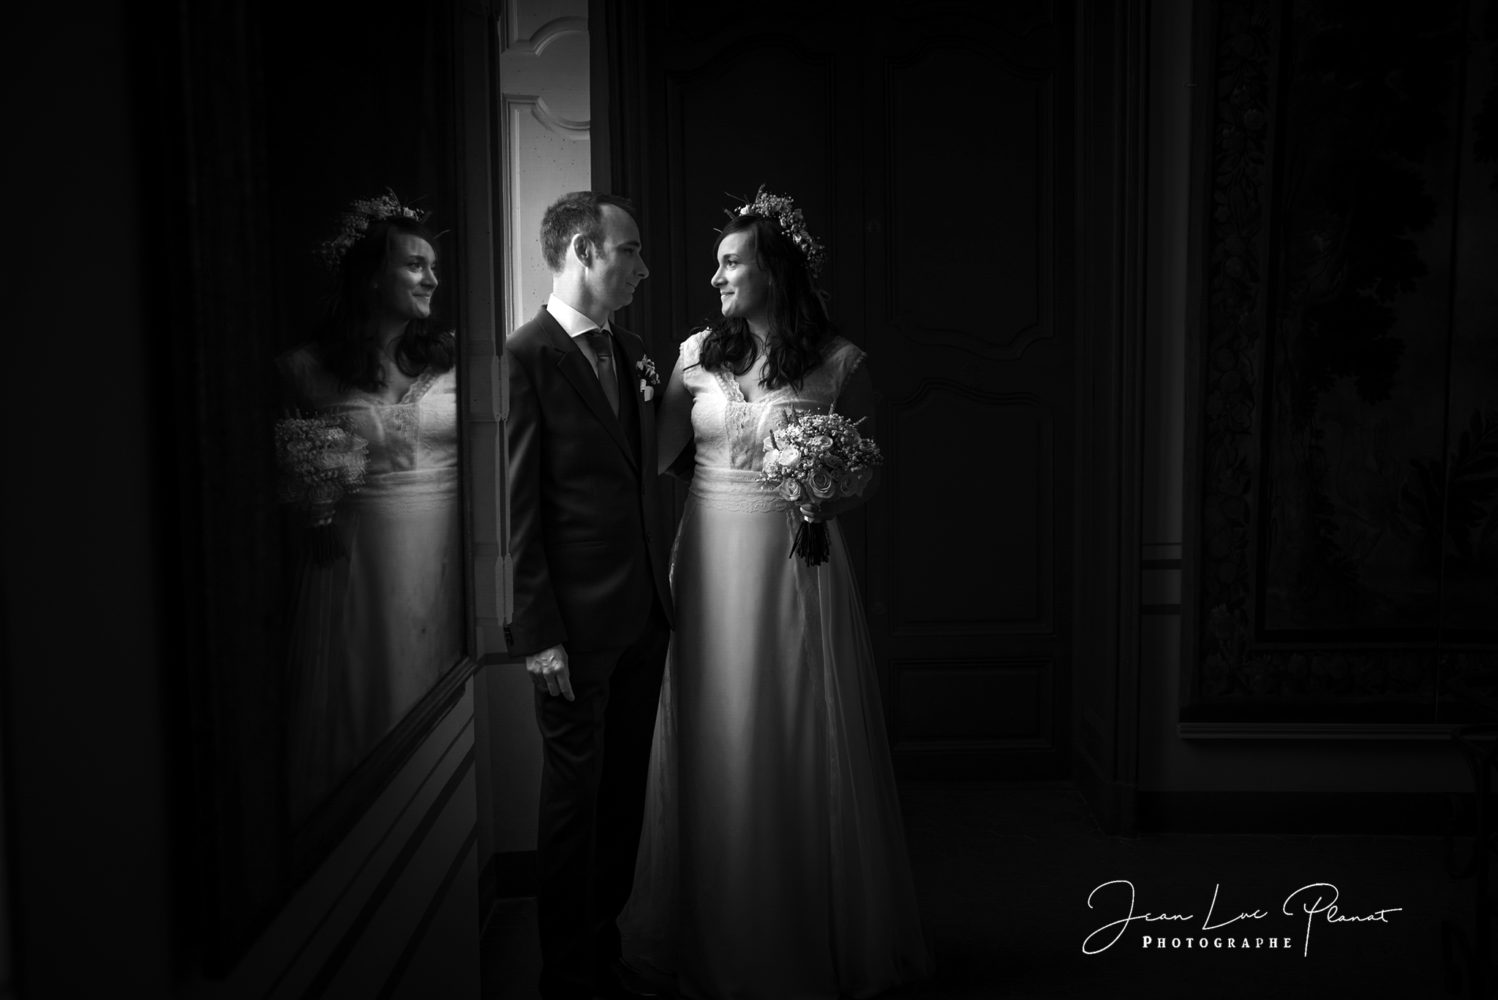 jean-luc Planat photographe et vidéaste de mariage dans le Var et la région PACA